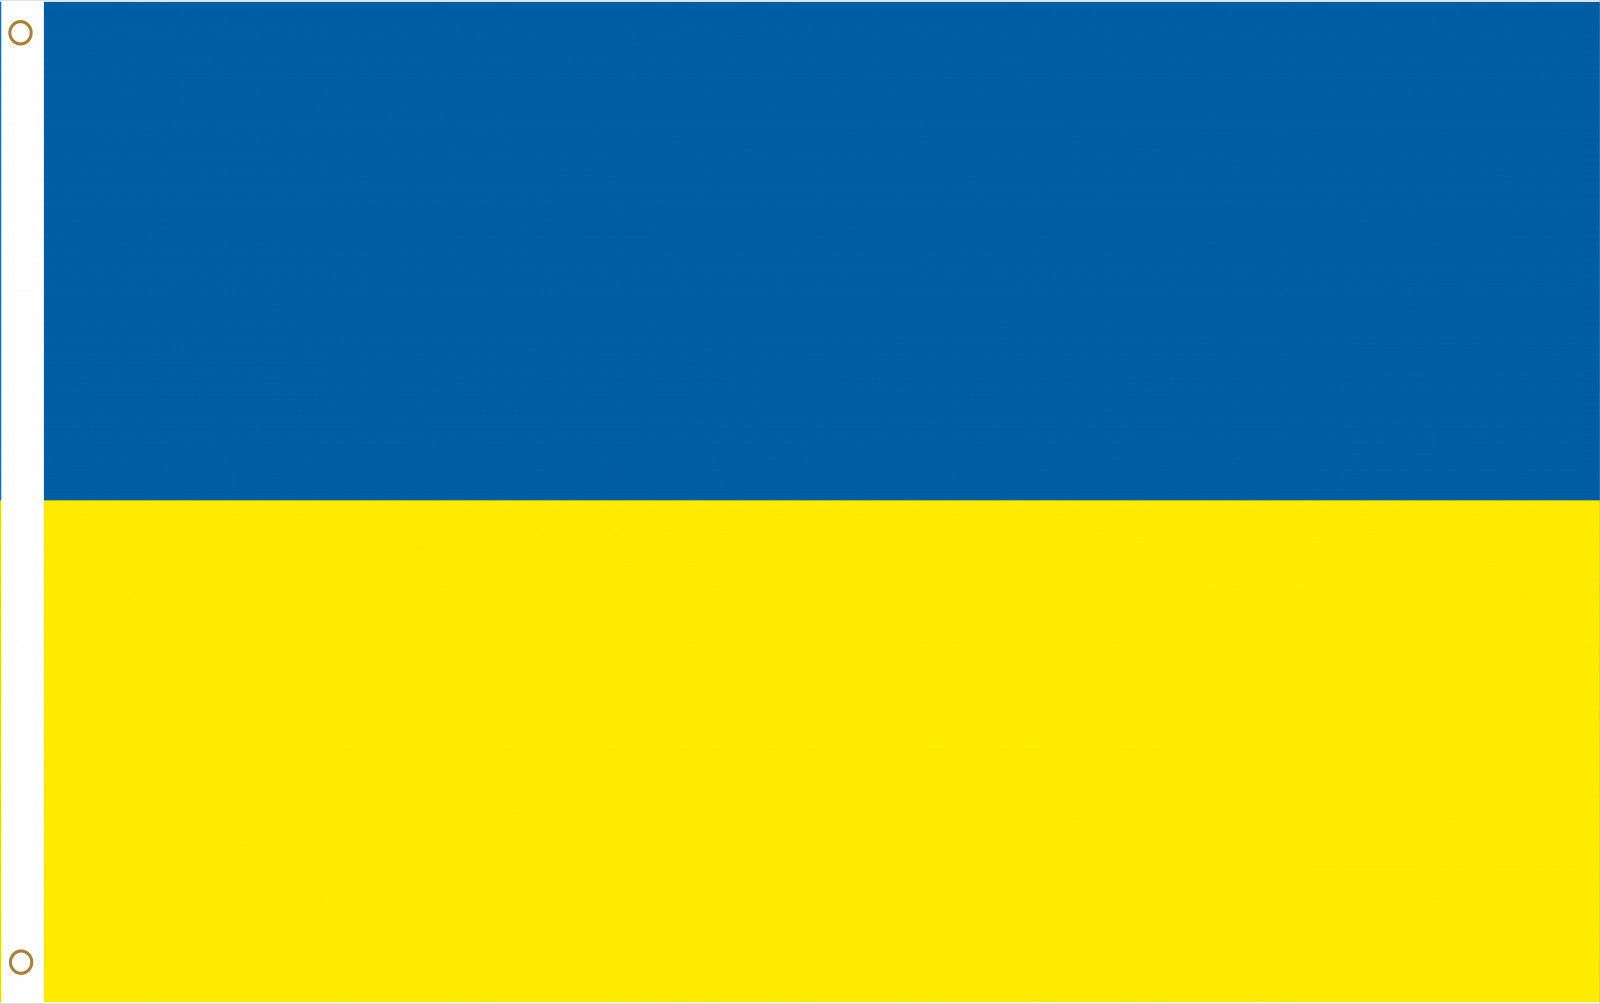 Länderflagge Ukraine